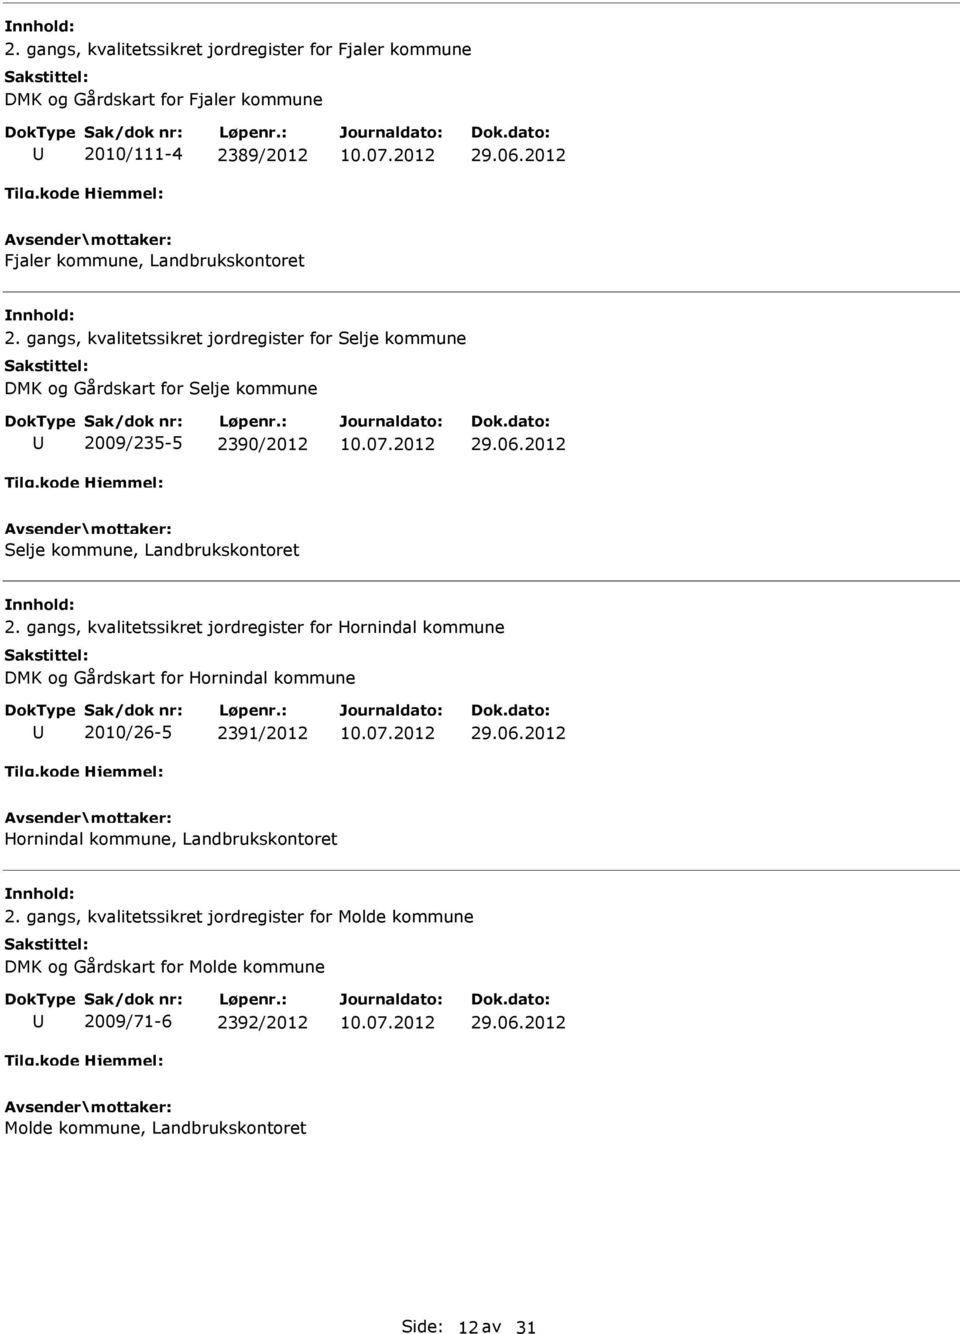 gangs, kvalitetssikret jordregister for Hornindal kommune DMK og Gårdskart for Hornindal kommune 2010/26-5 2391/2012 Hornindal kommune,